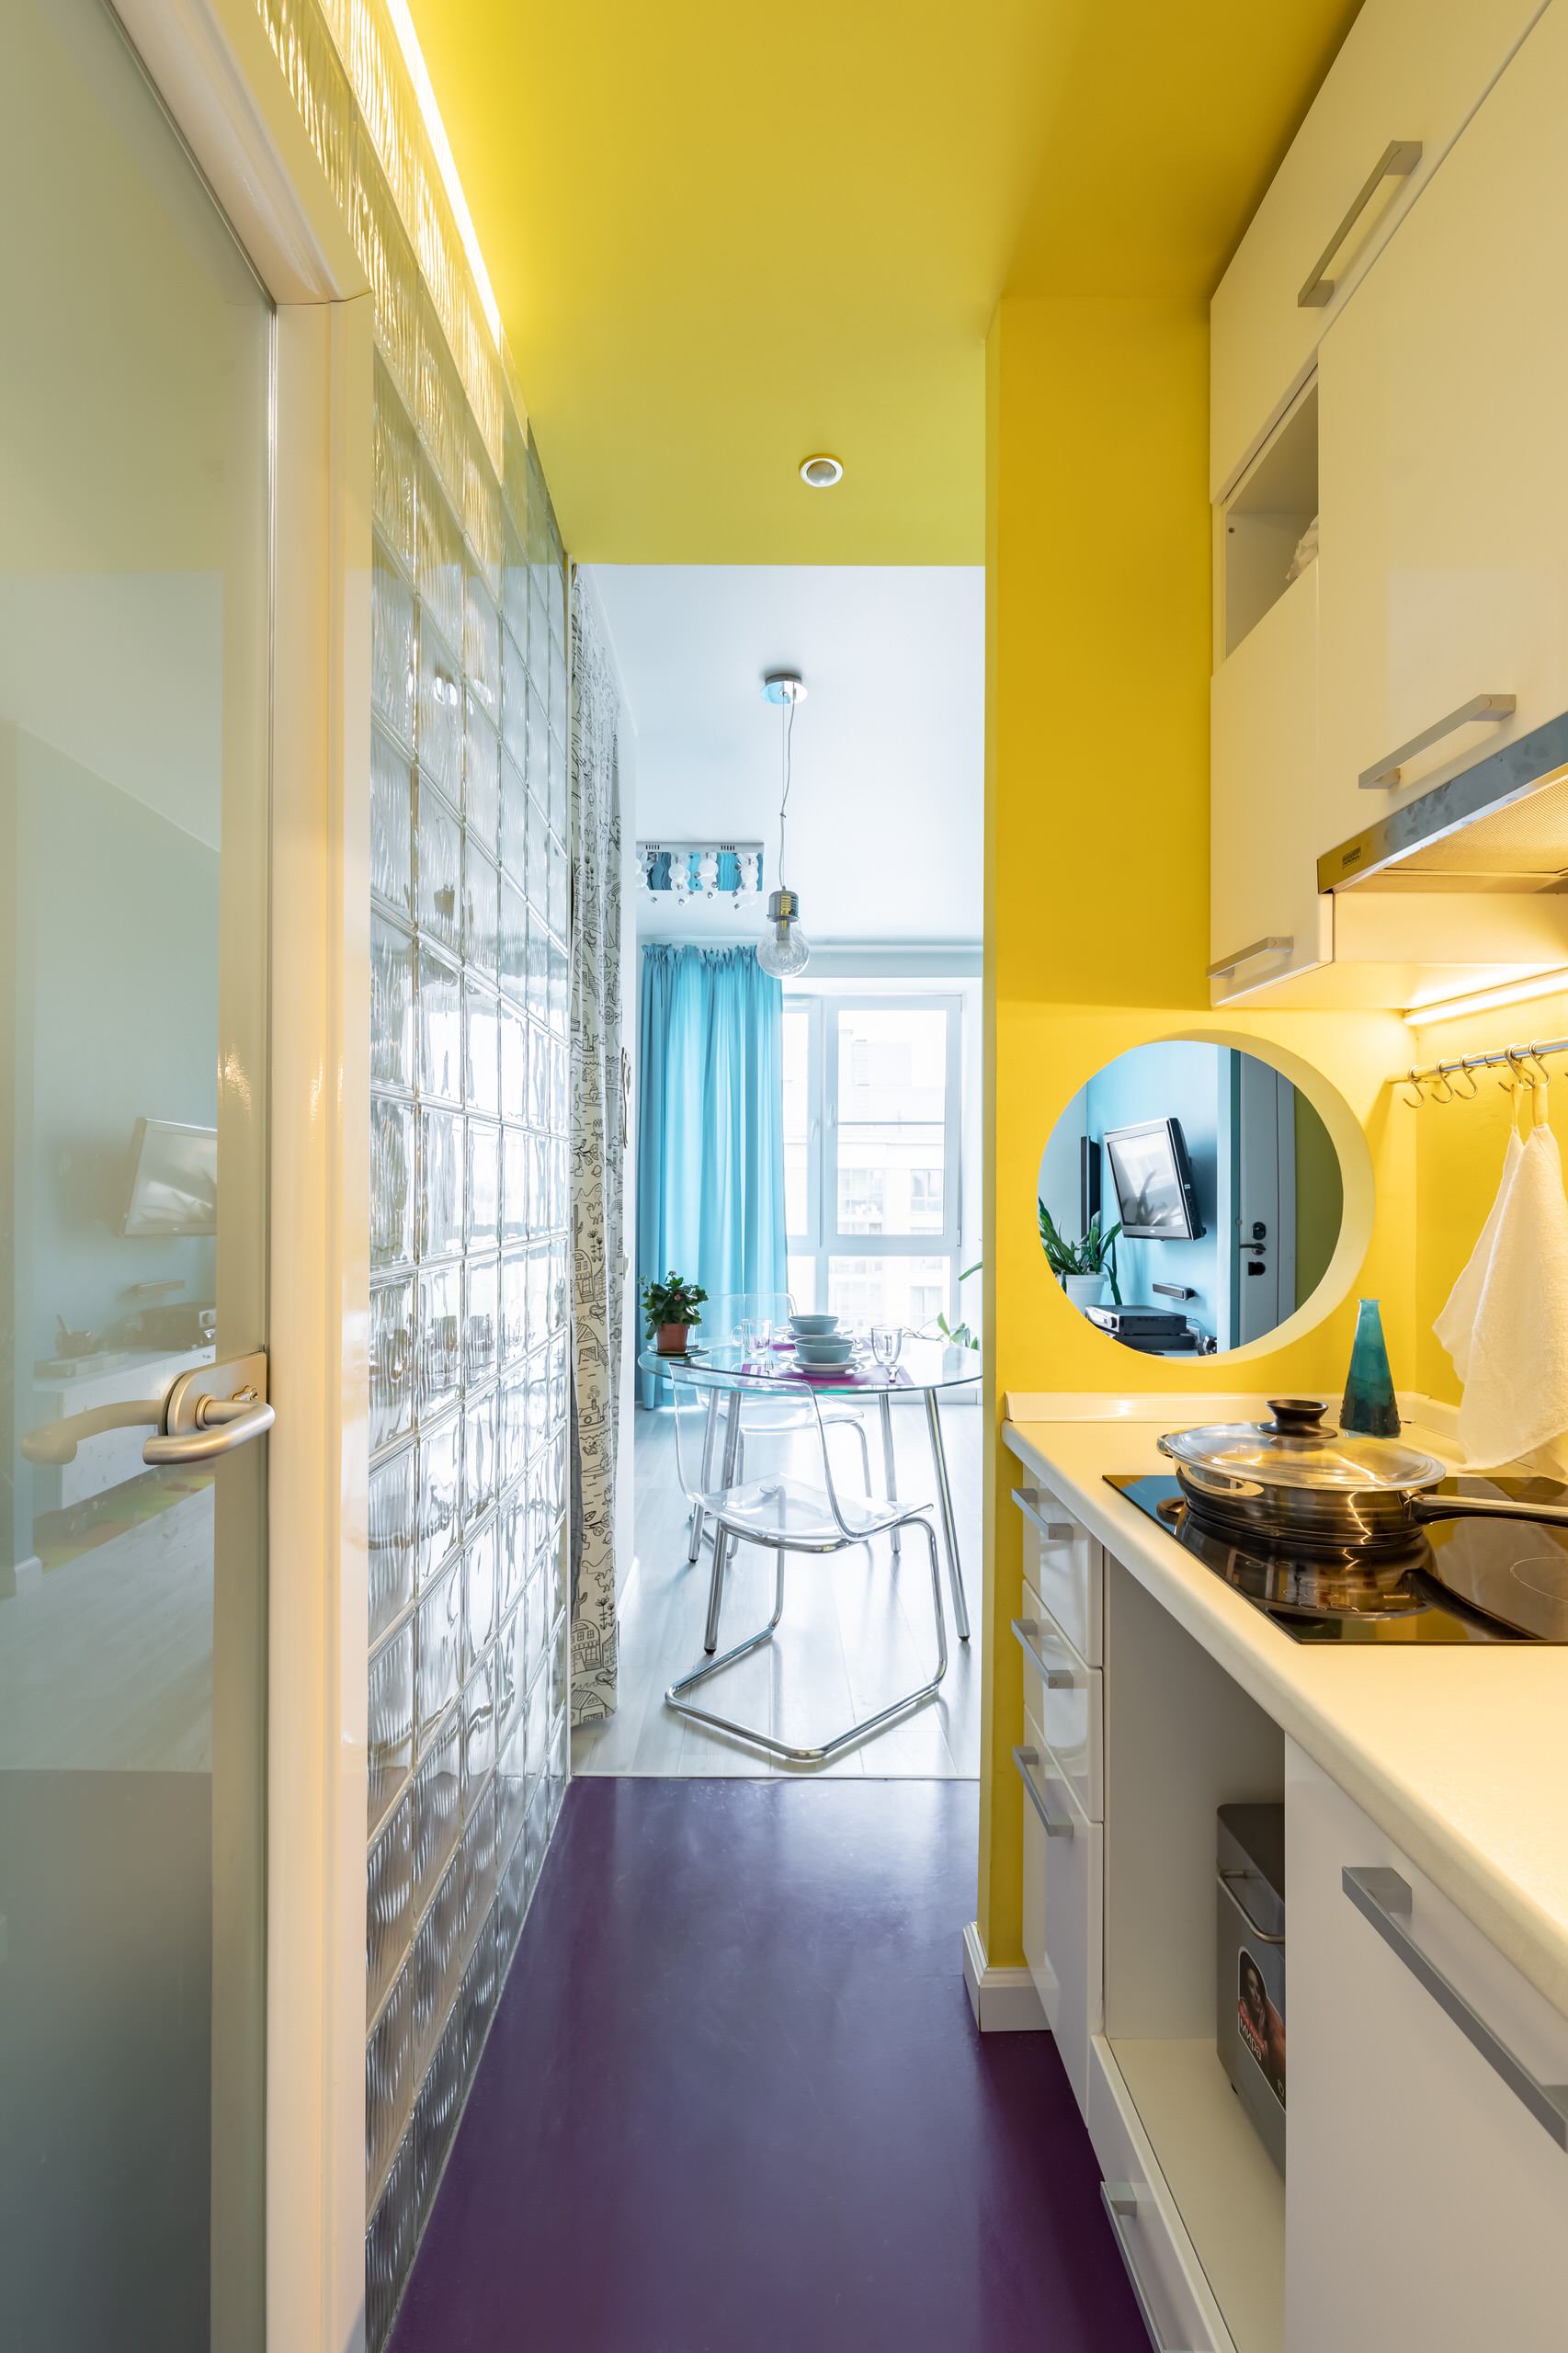 Дизайн узкой кухни - как расширить пространство, сохранив все стены – интернет-магазин GoldenPlaza